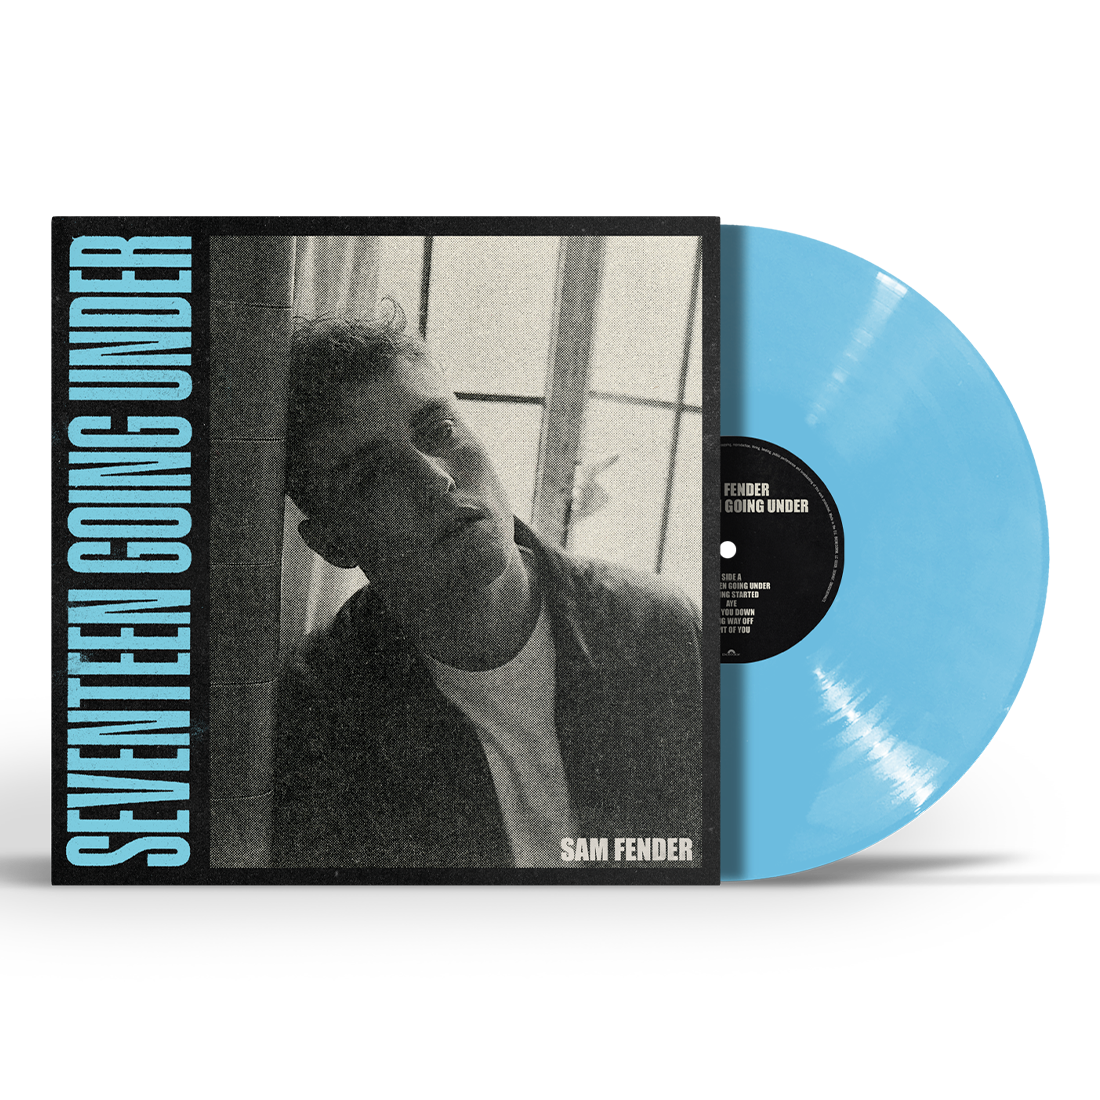 Sam Fender - Seventeen Going Under: Limited Edition Baby Blue Vinyl LP